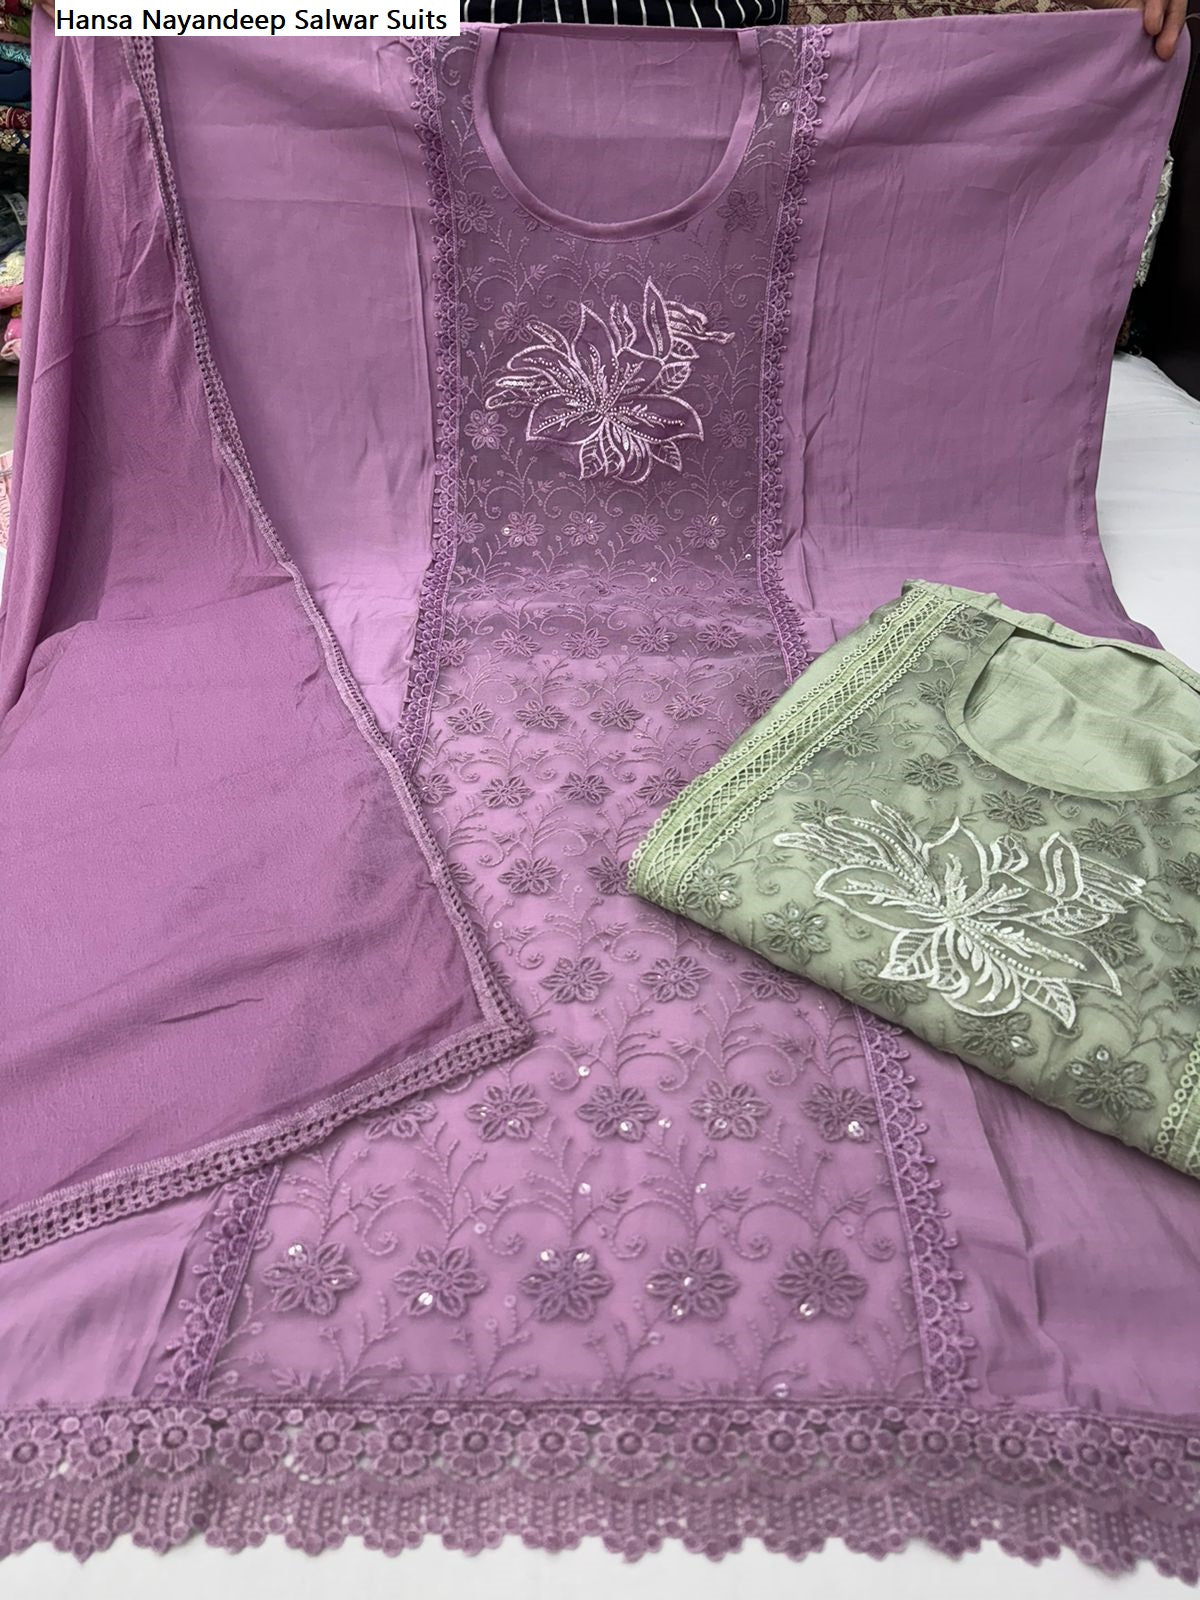 Hansa Nayandeep Roman Silk Salwar Suits